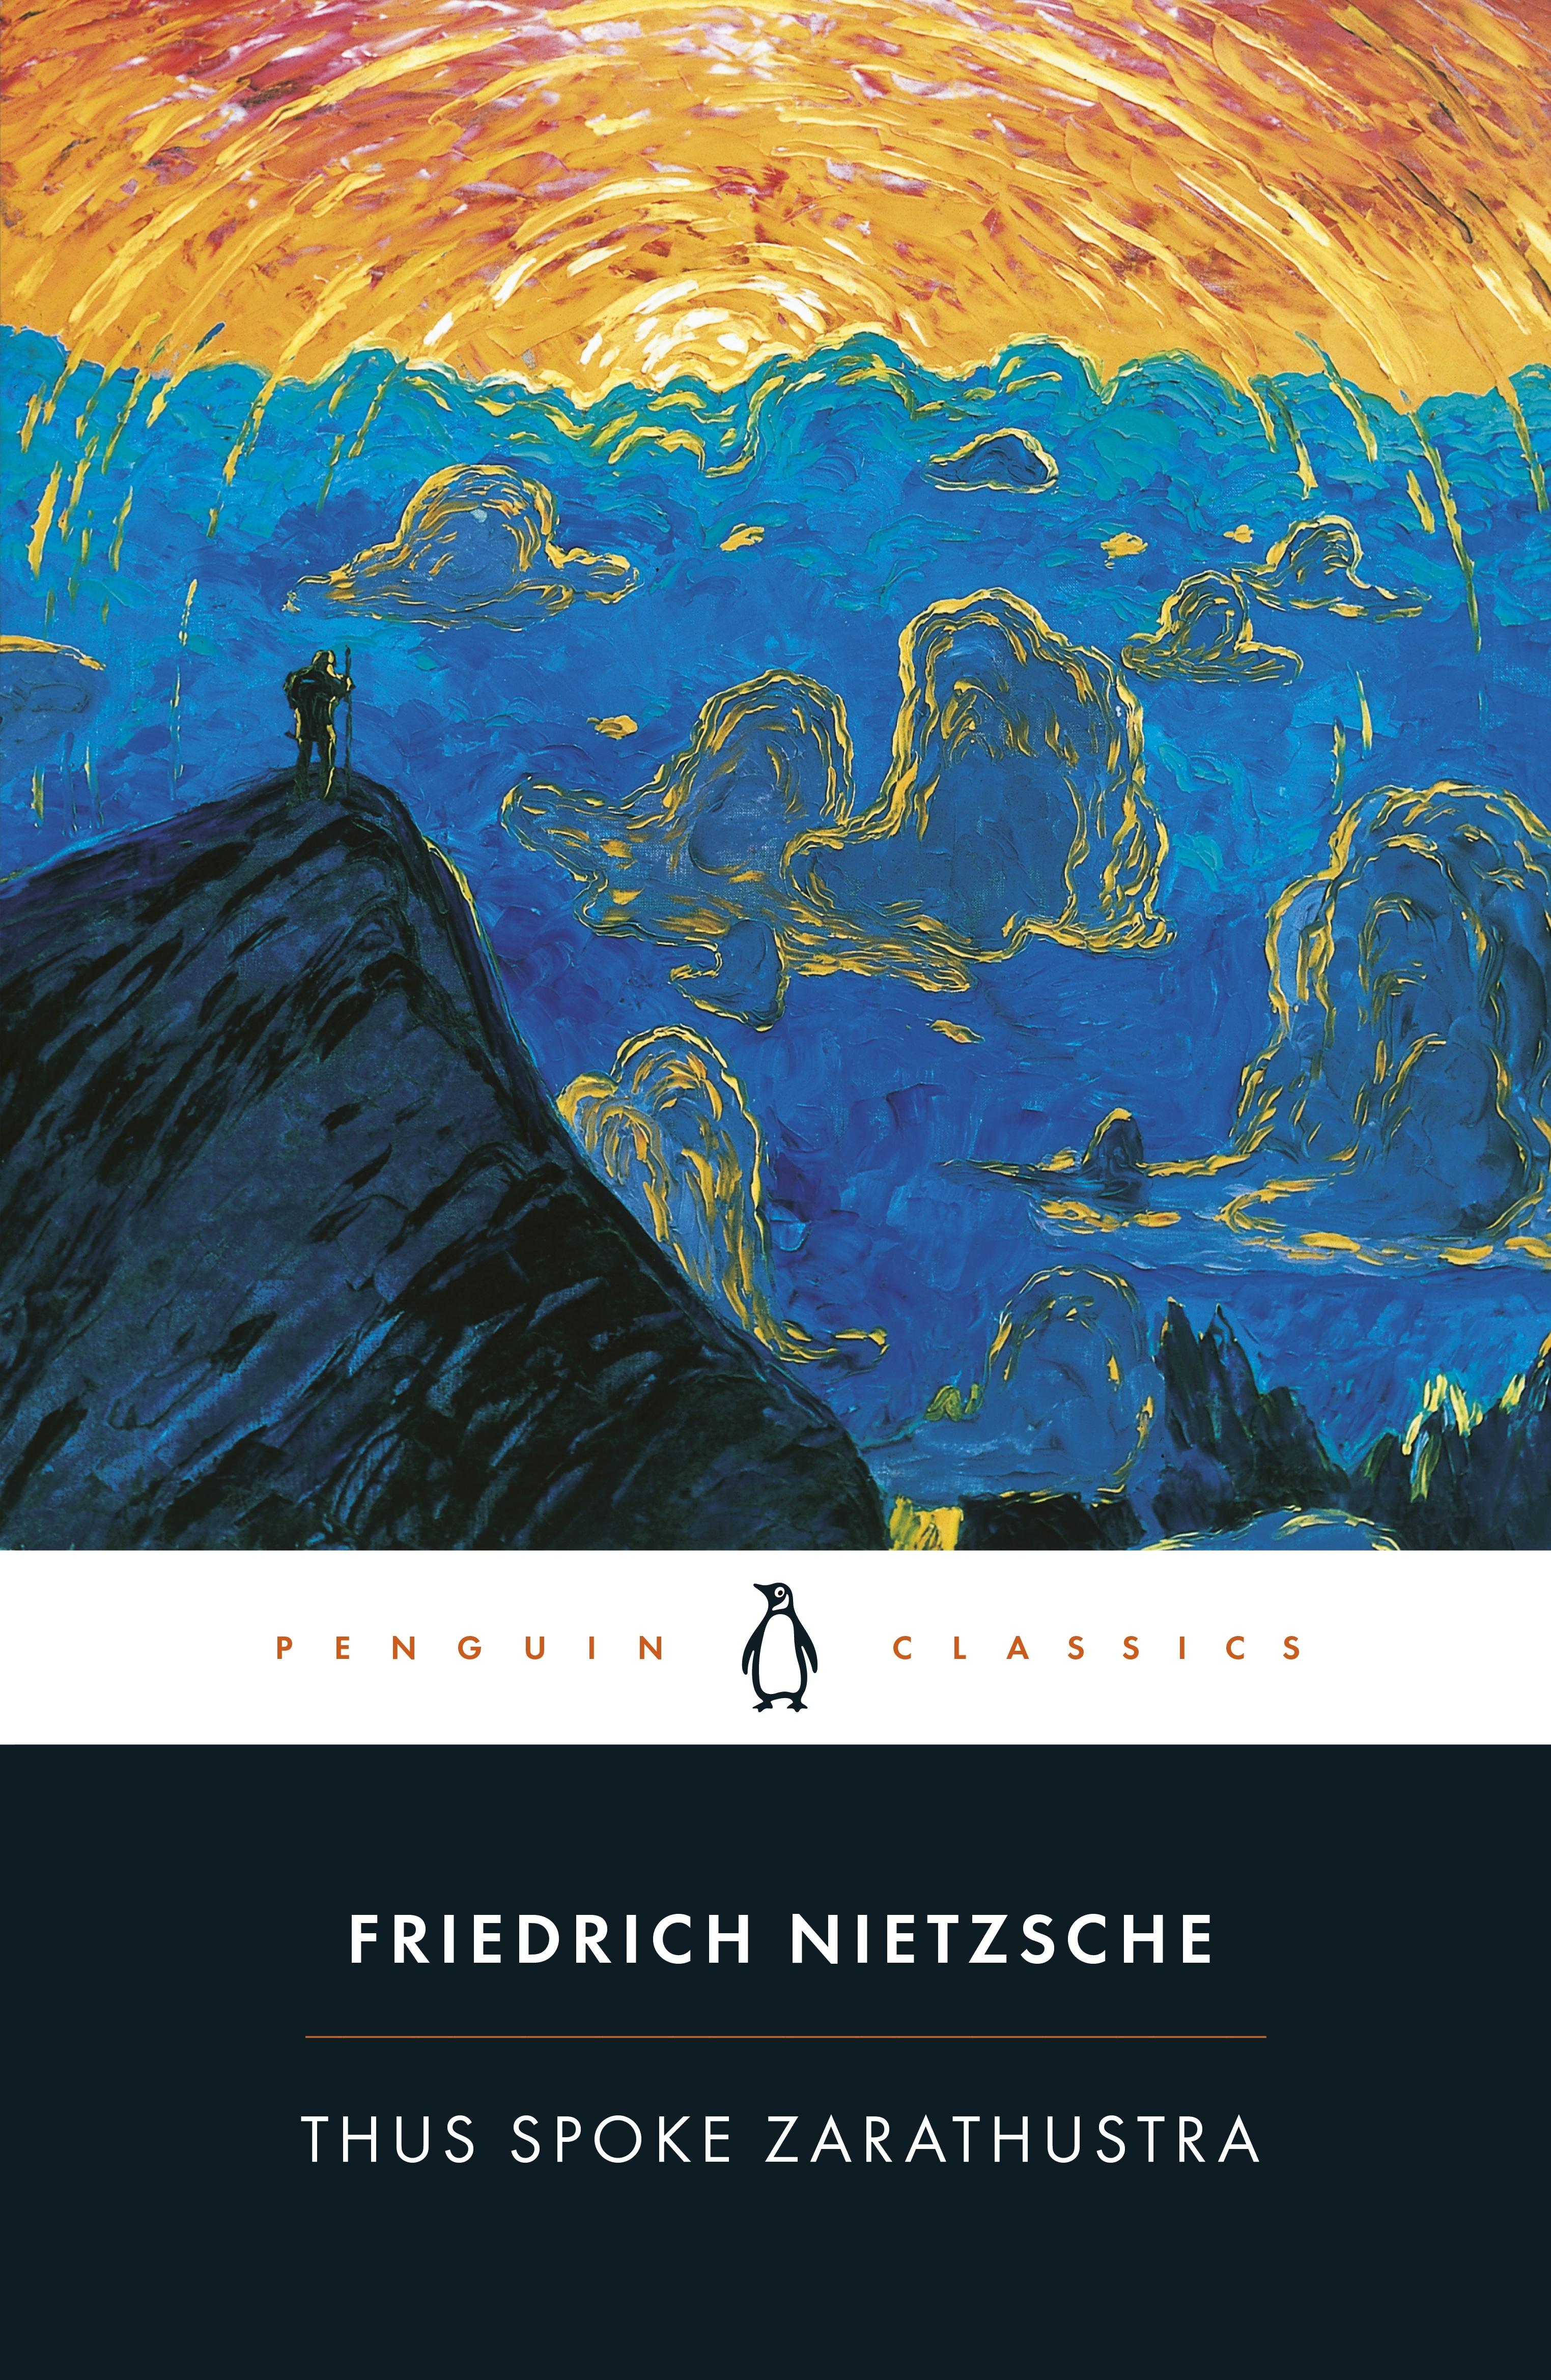 Book “Thus Spoke Zarathustra” by Friedrich Nietzsche — February 28, 1974